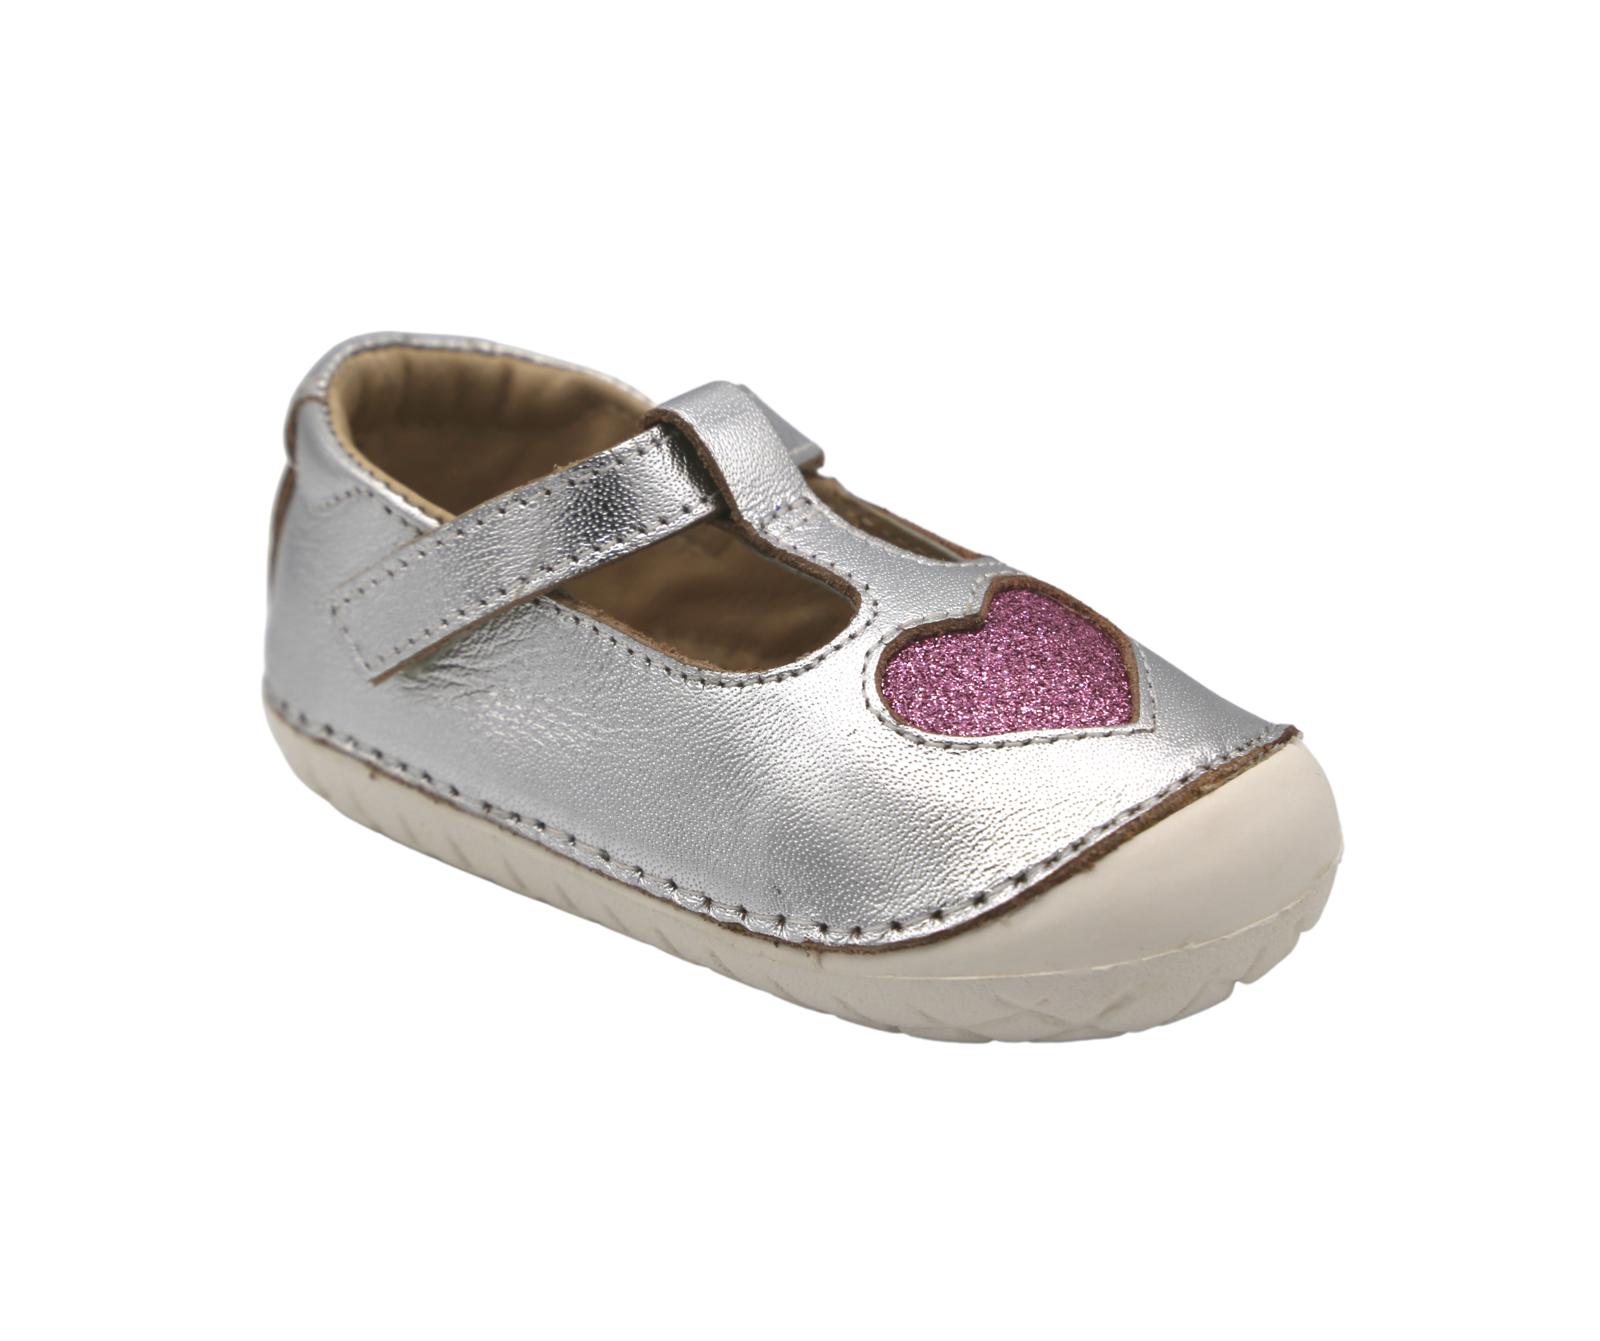 Oldsoles Pave Love T-Bar Shoes - Happy Feet BoutiqueHappy Feet Boutique